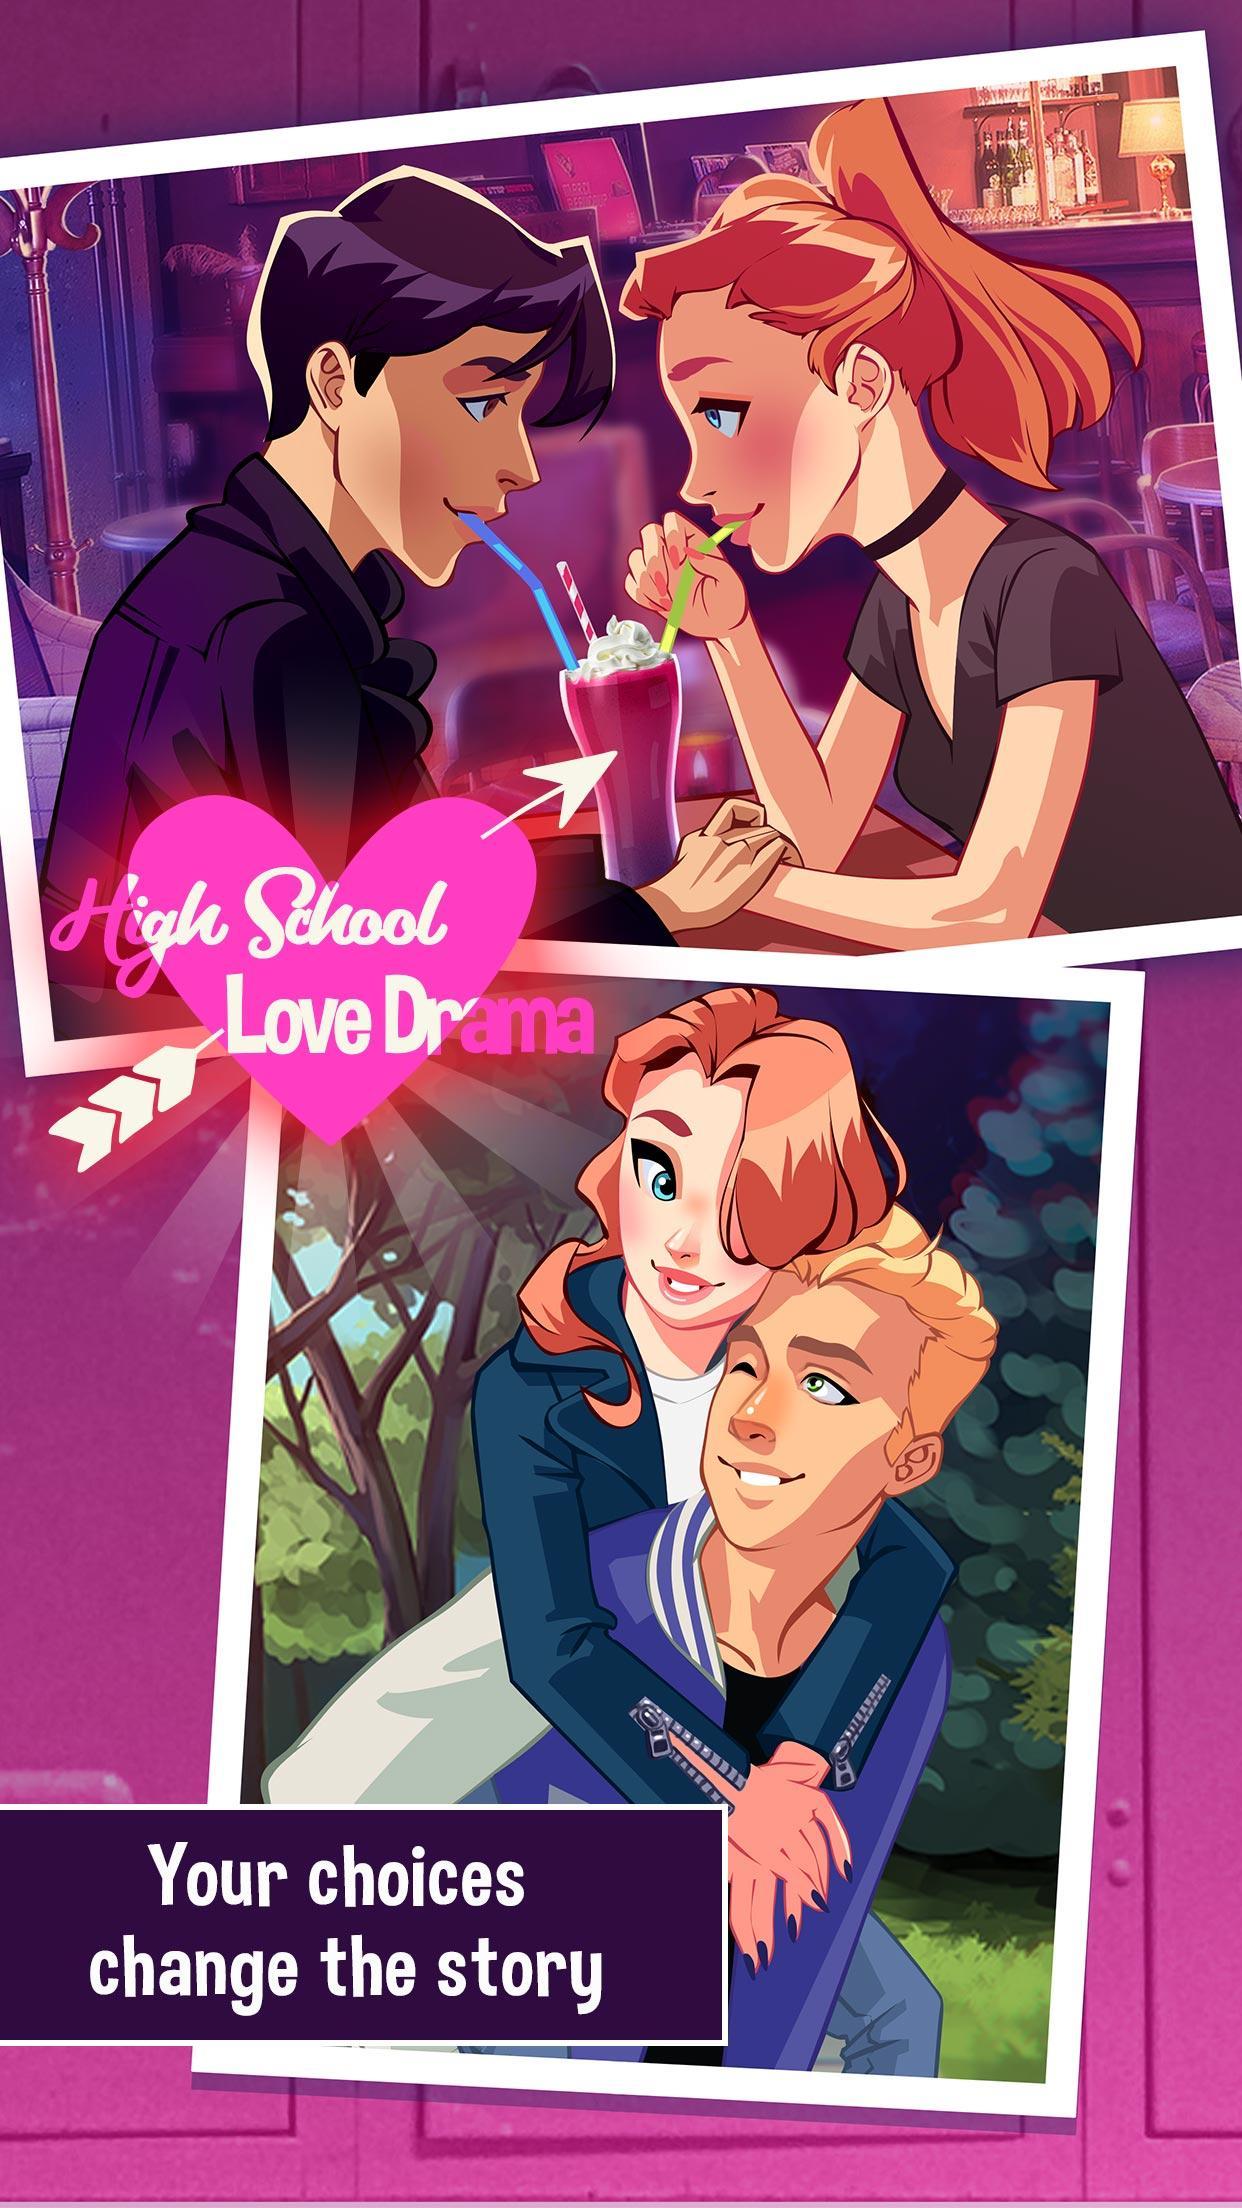 고등학교 사랑 드라마: 사랑 이야기 게임